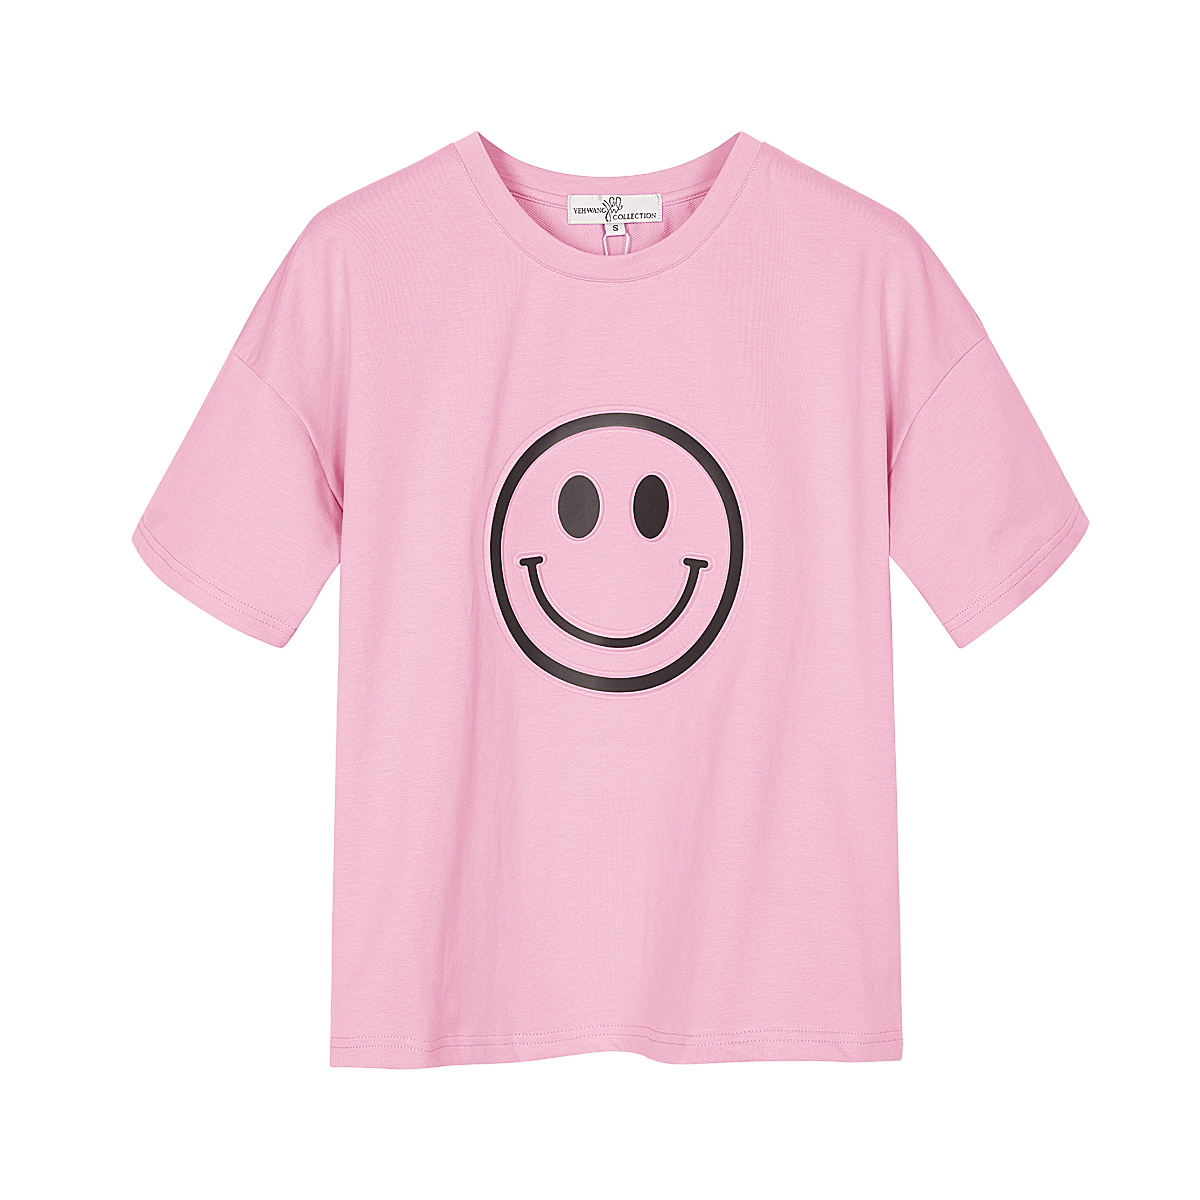 T-shirt met smiley